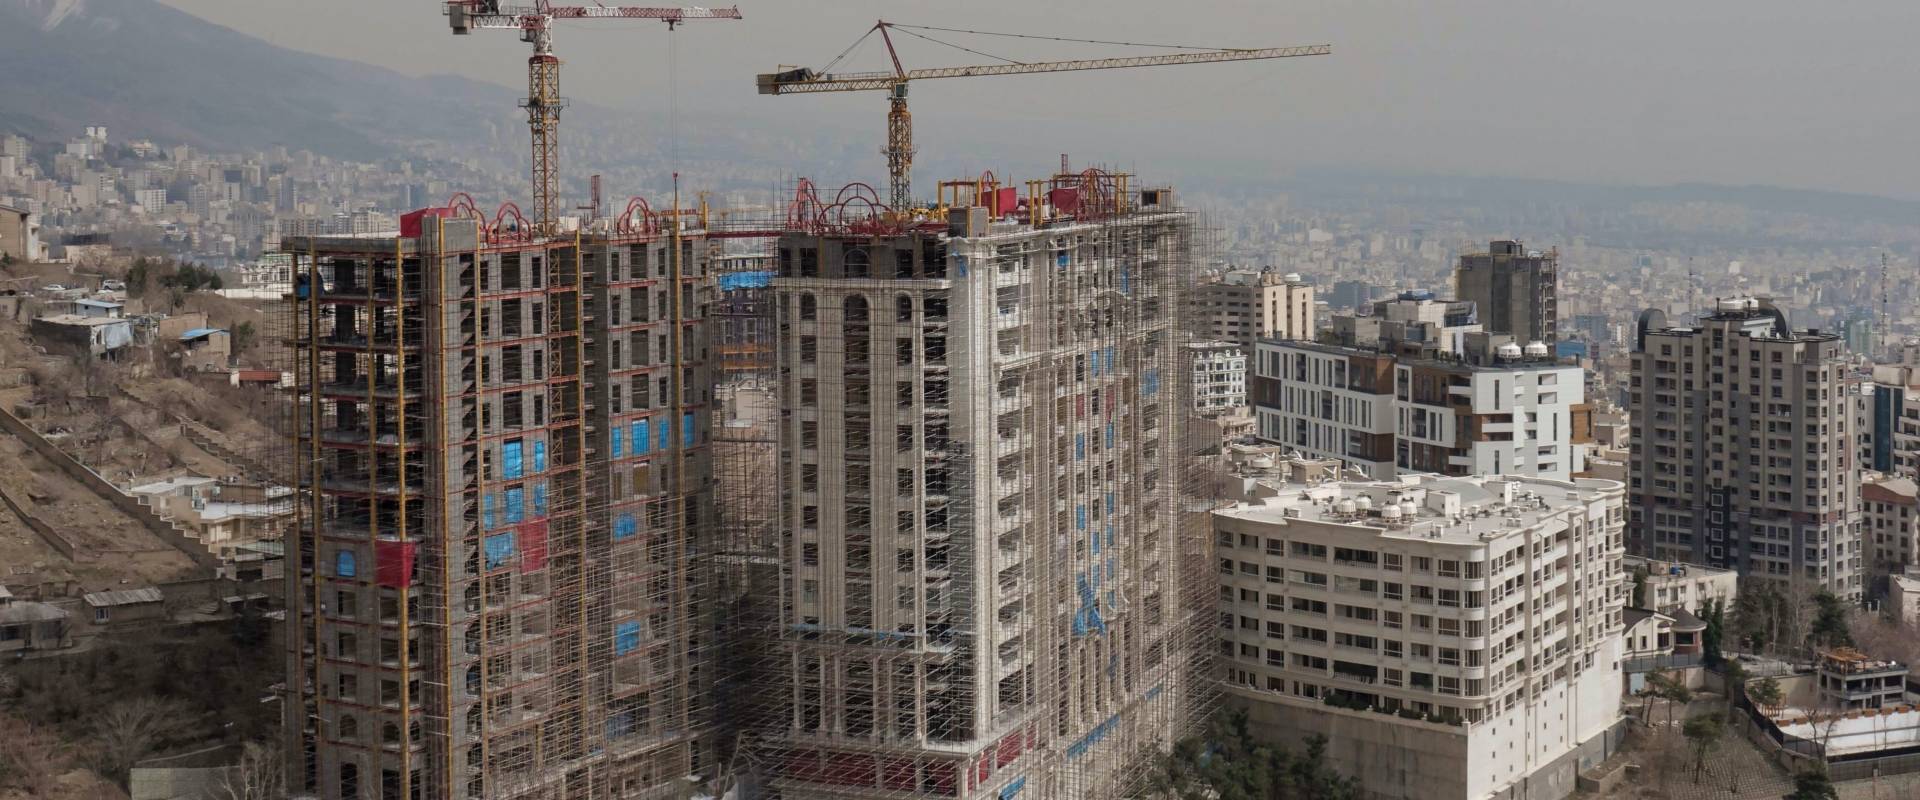 Baustellen in der iranischen Hauptstadt Teheran